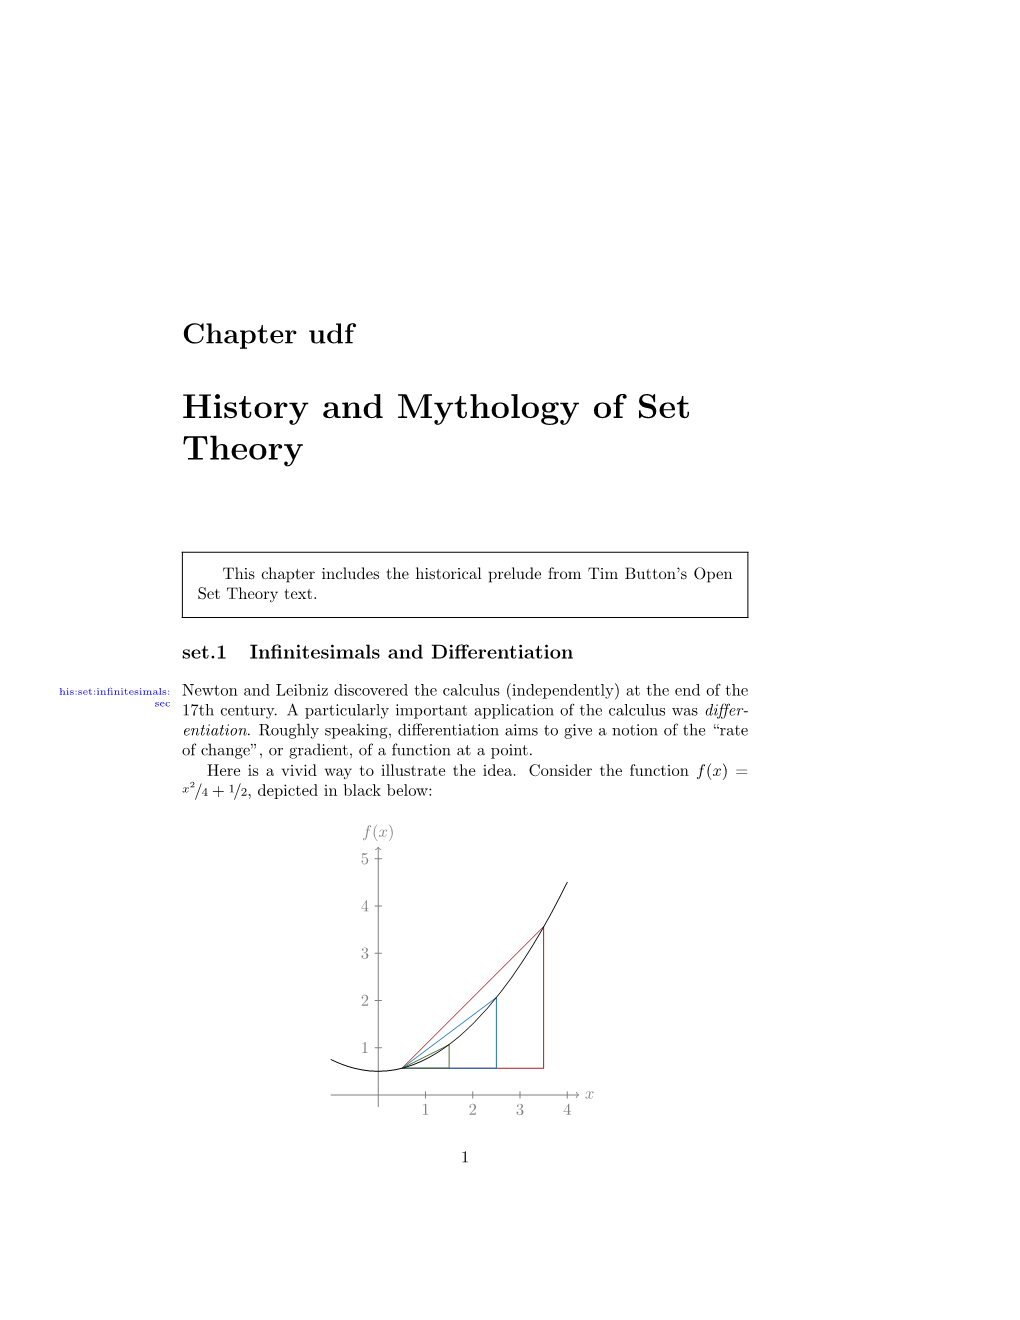 History and Mythology of Set Theory